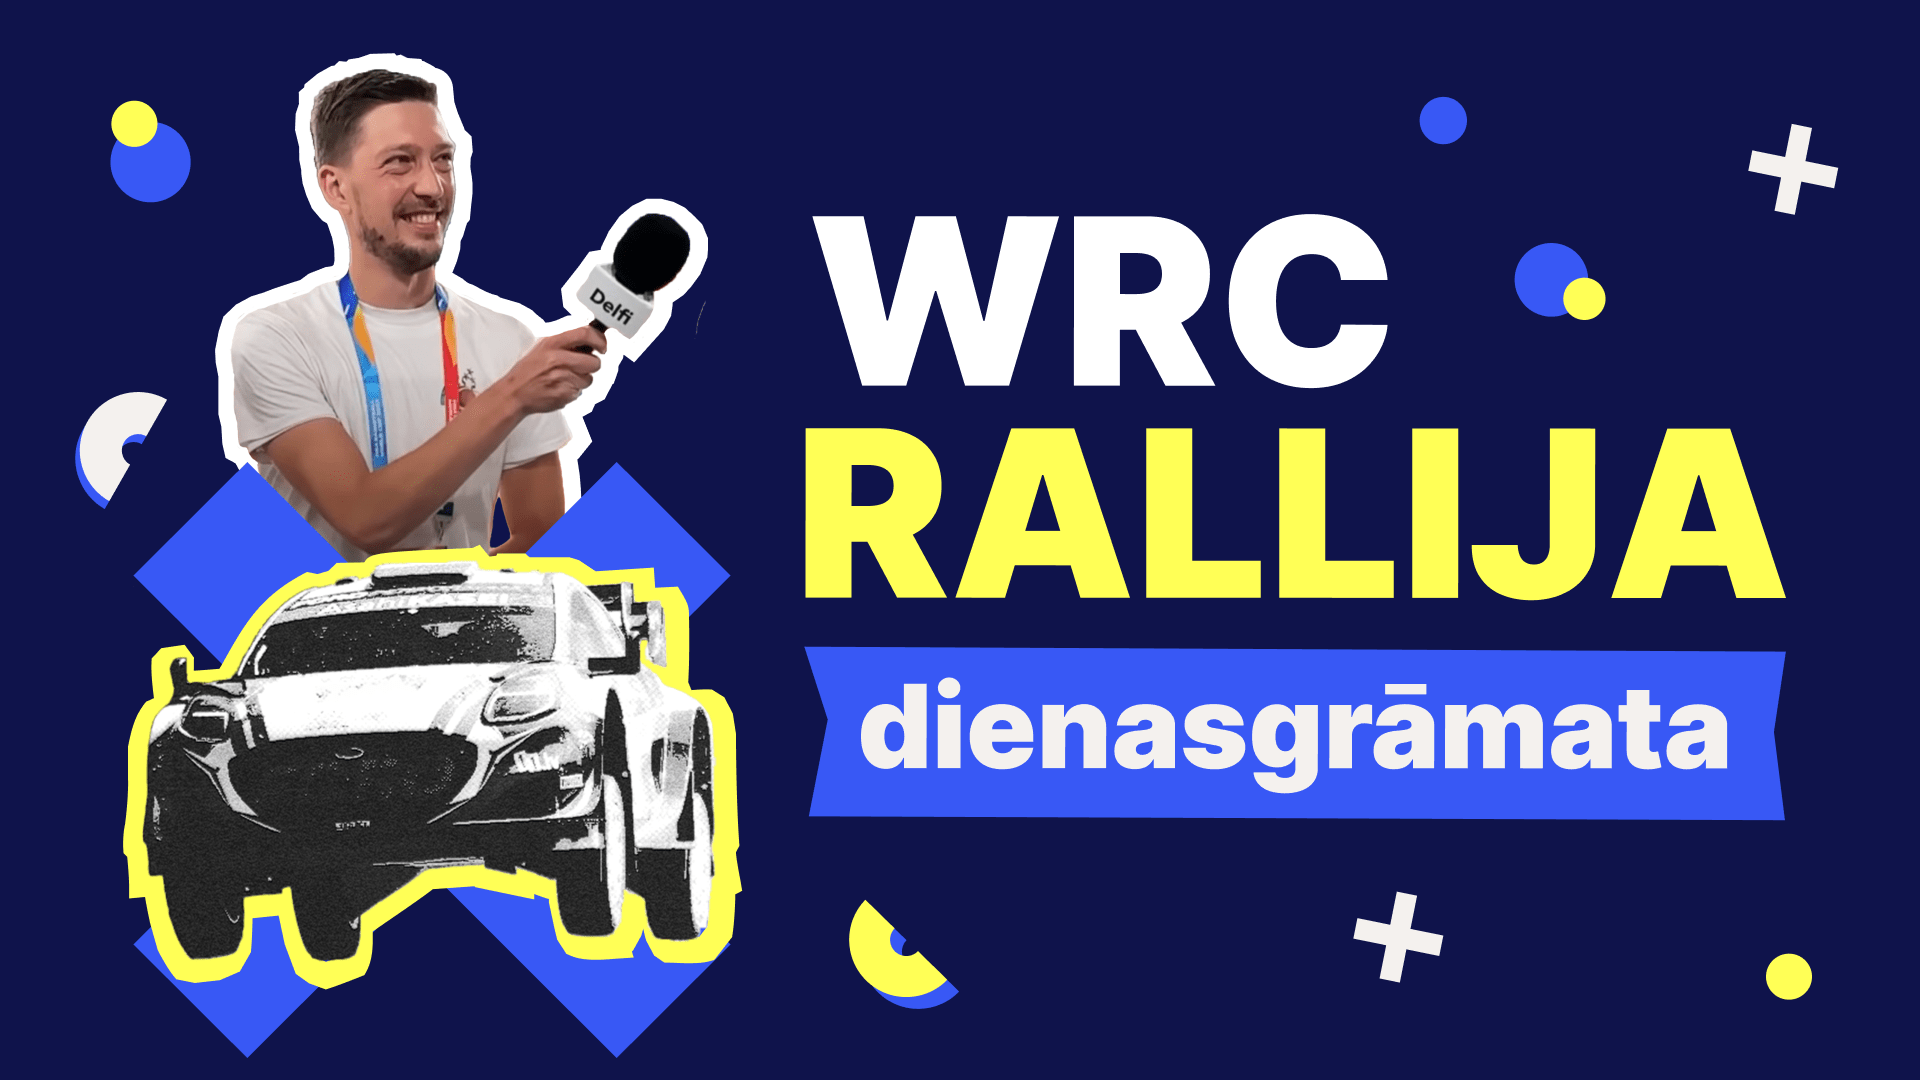 WRC rallija dienasgrāmata